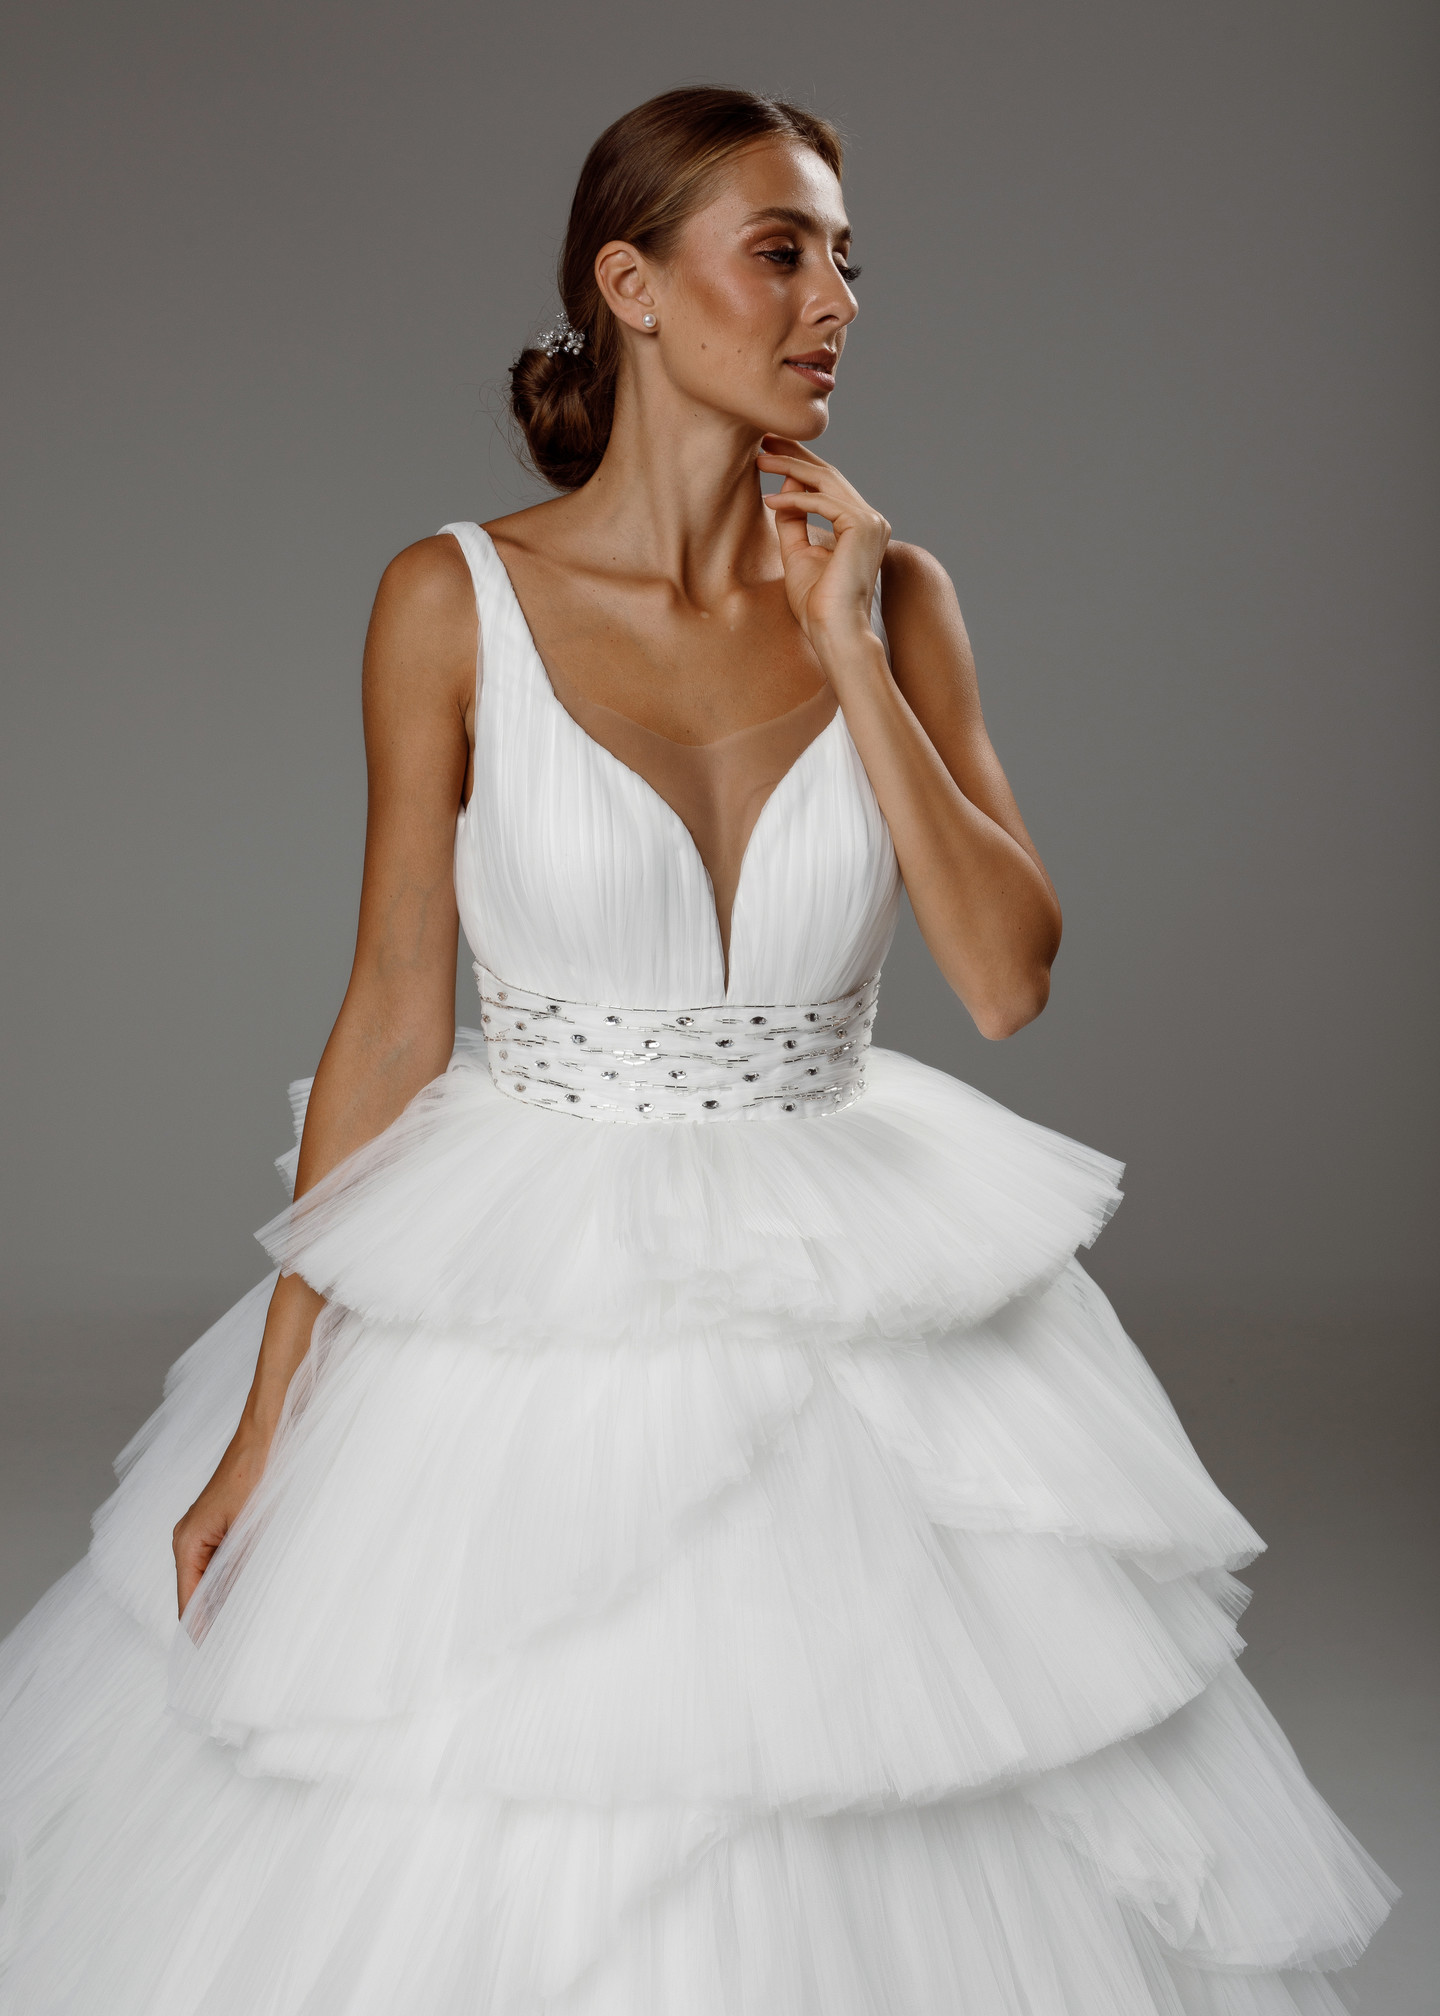 Платье Вивьен, 2020, одежда, платье, свадебное, молочно-белый, сетка, вышивка, А-силуэт, шлейф, архив